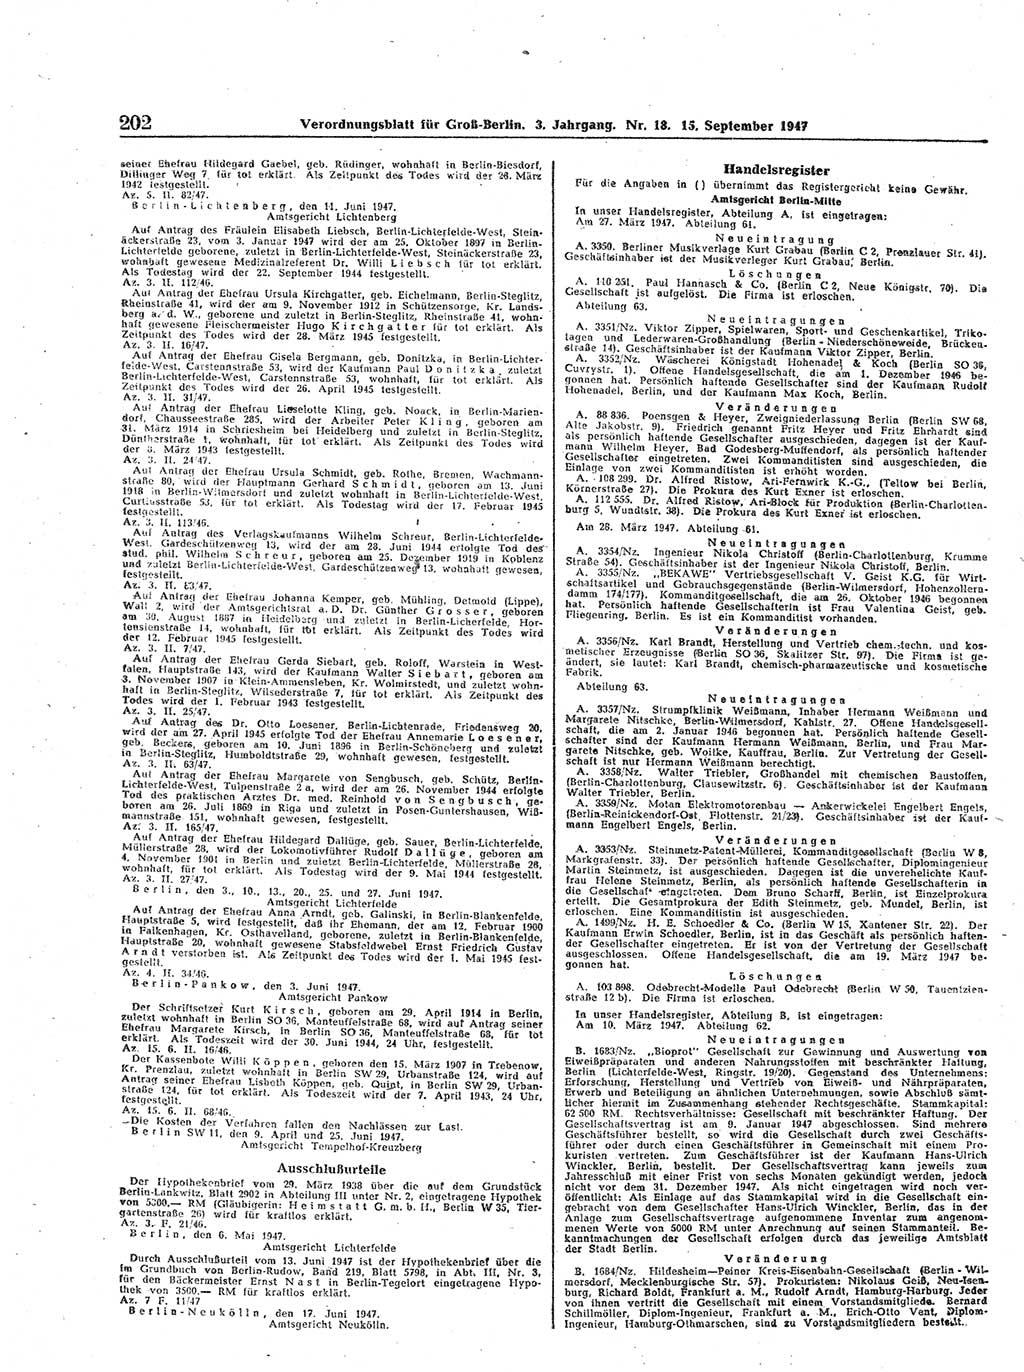 Verordnungsblatt (VOBl.) für Groß-Berlin 1947, Seite 202 (VOBl. Bln. 1947, S. 202)